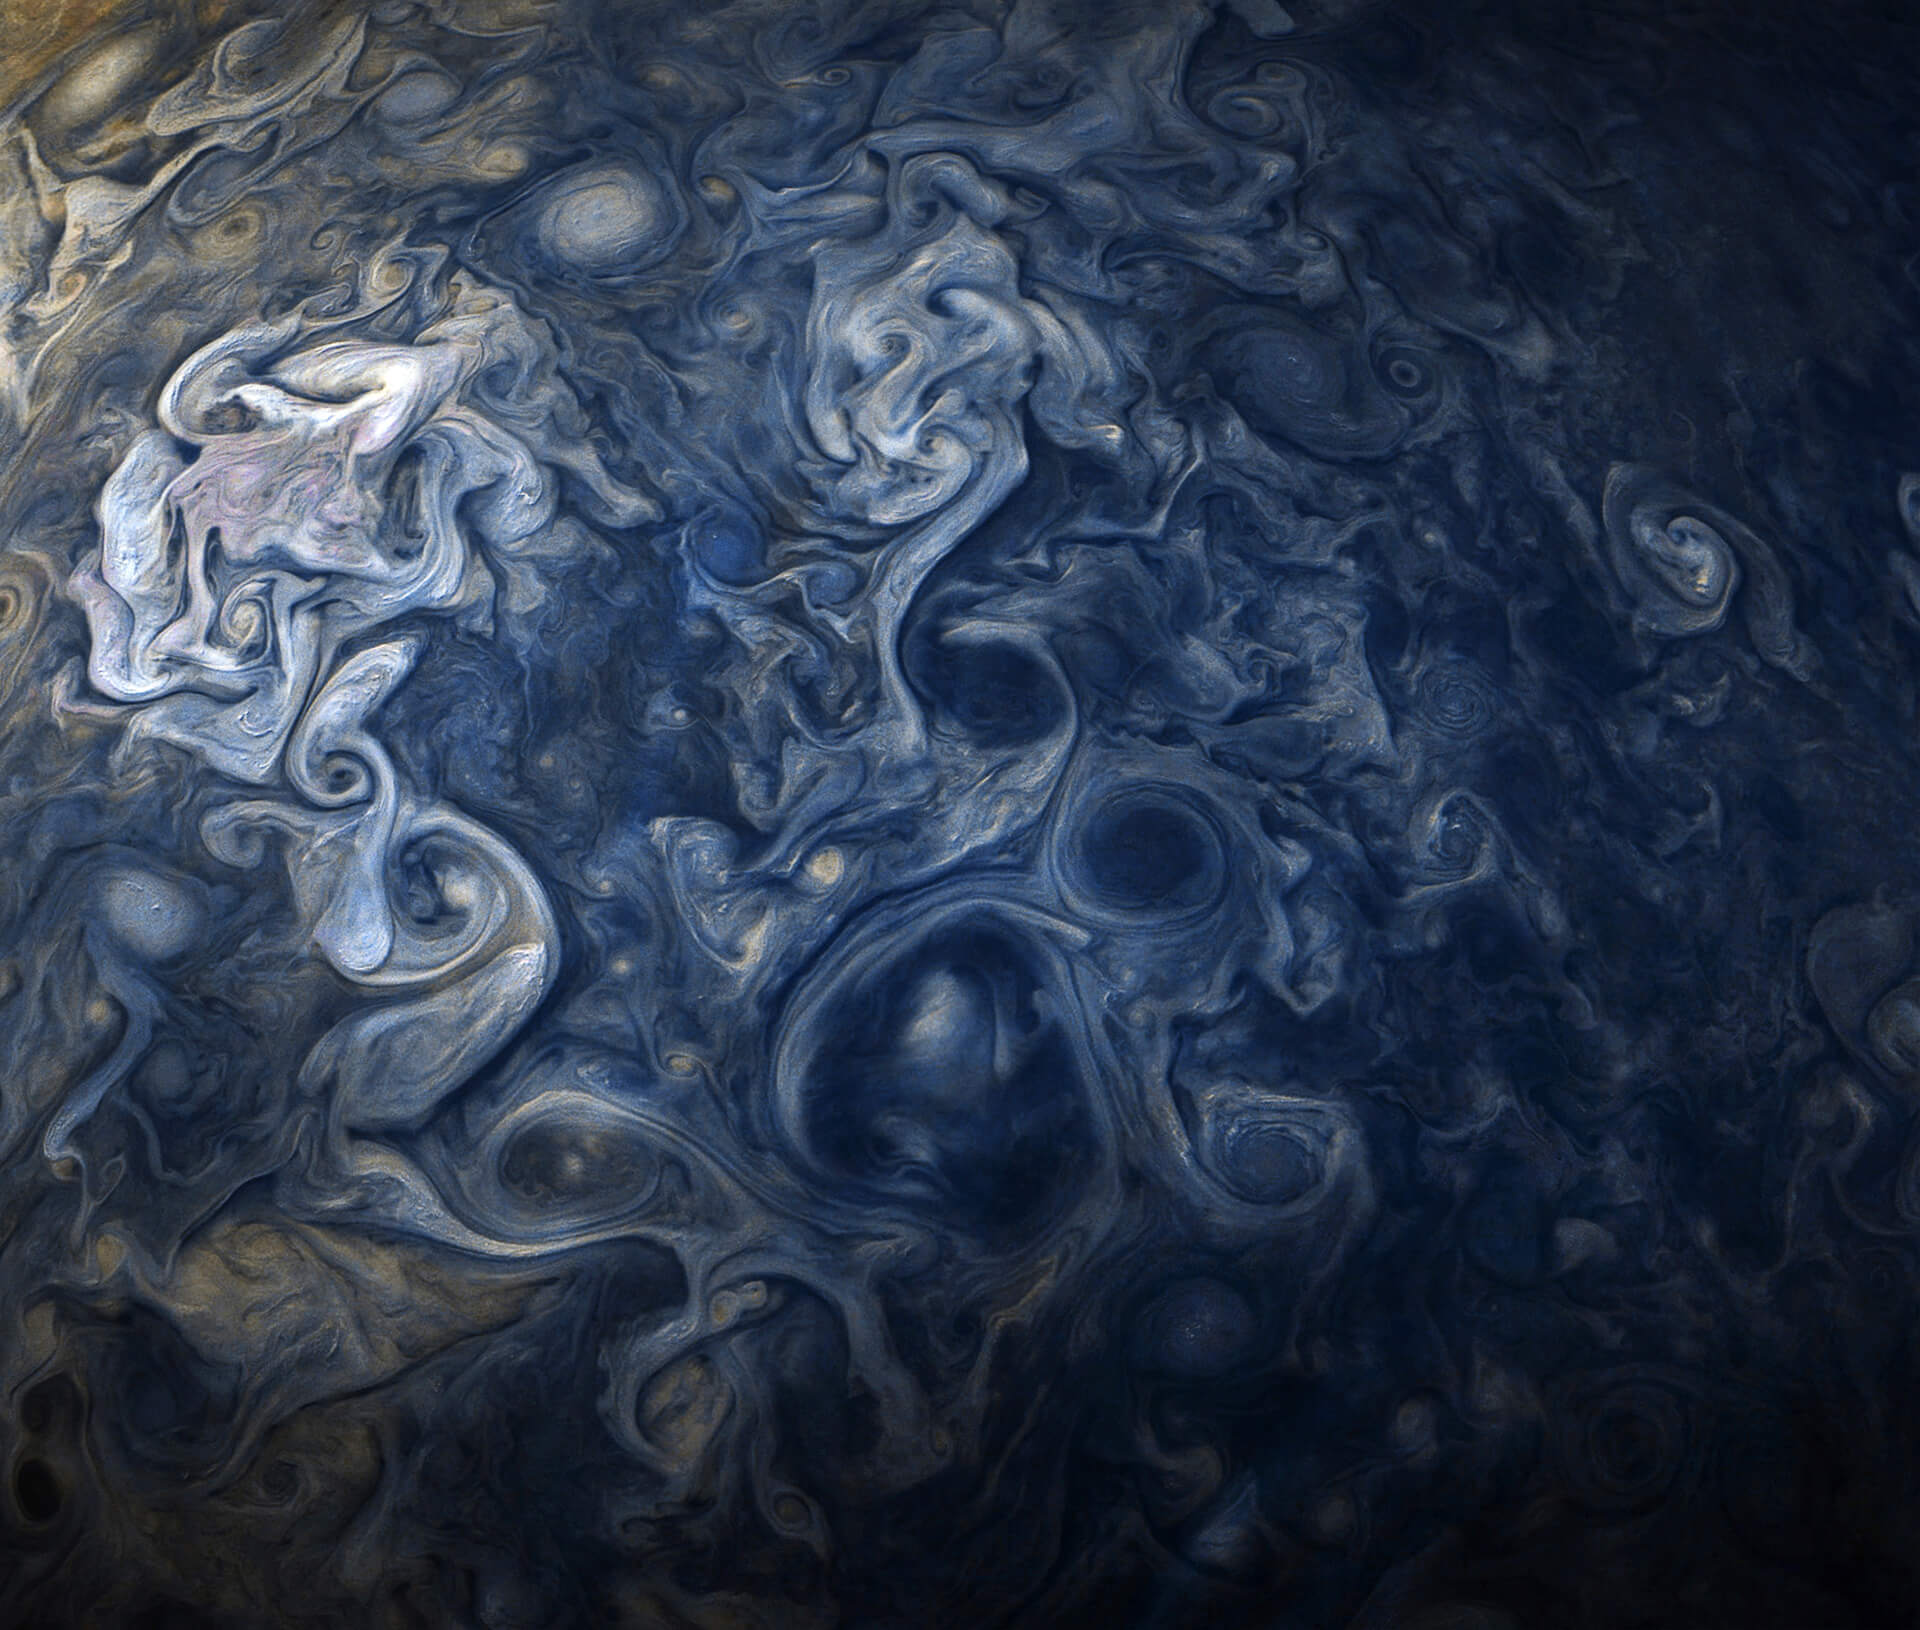 Jupiter's Clouds